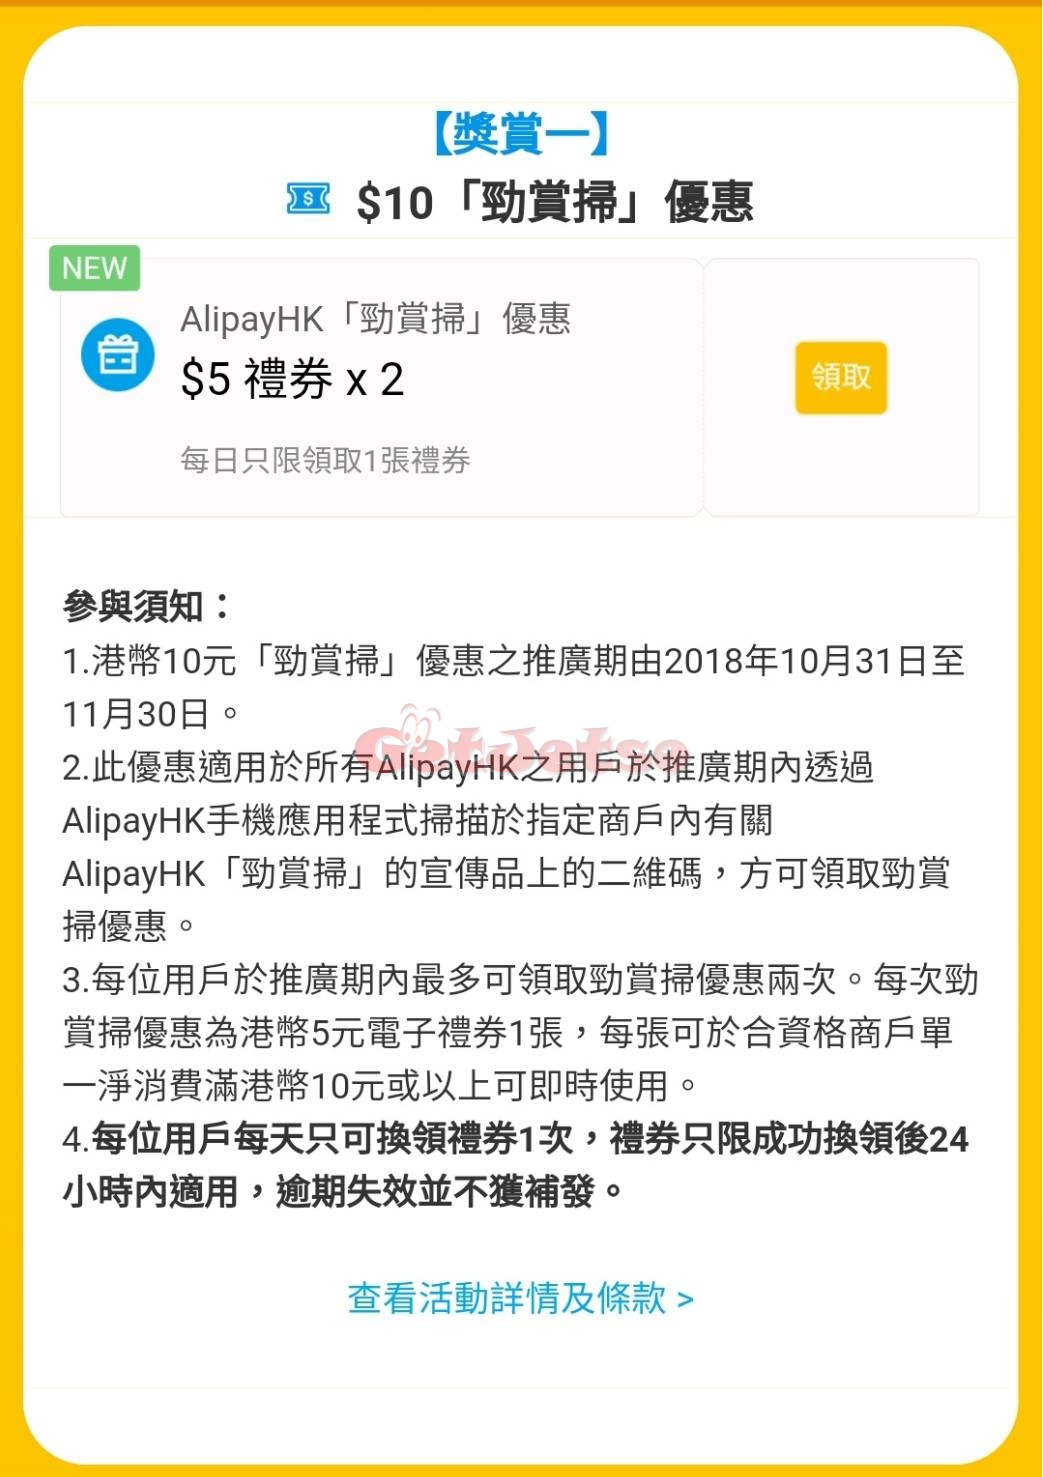 Alipay HK 支付寶「勁賞掃」送2 張 優惠券(至18年11月30日)圖片2